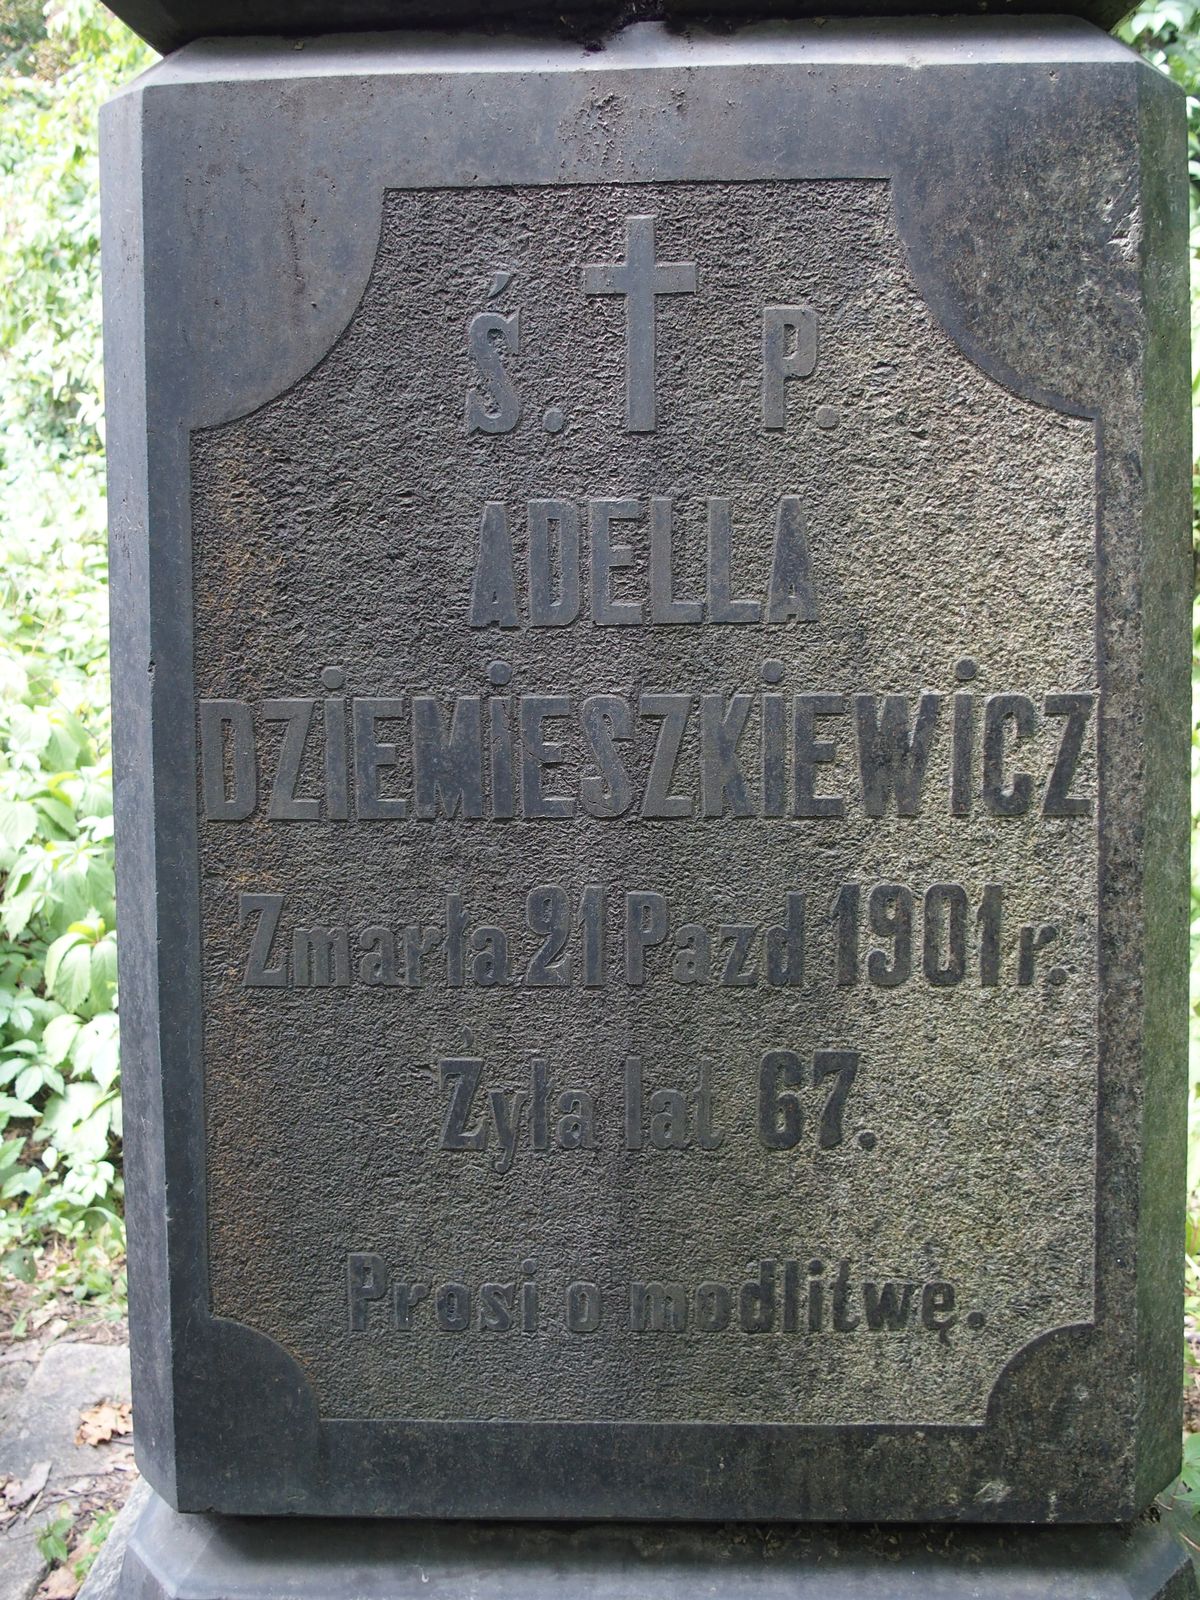 Napis z nagrobka Adeli Dziemieszkiewicz, cmentarz Bajkowa w Kijowie, stan z 2021